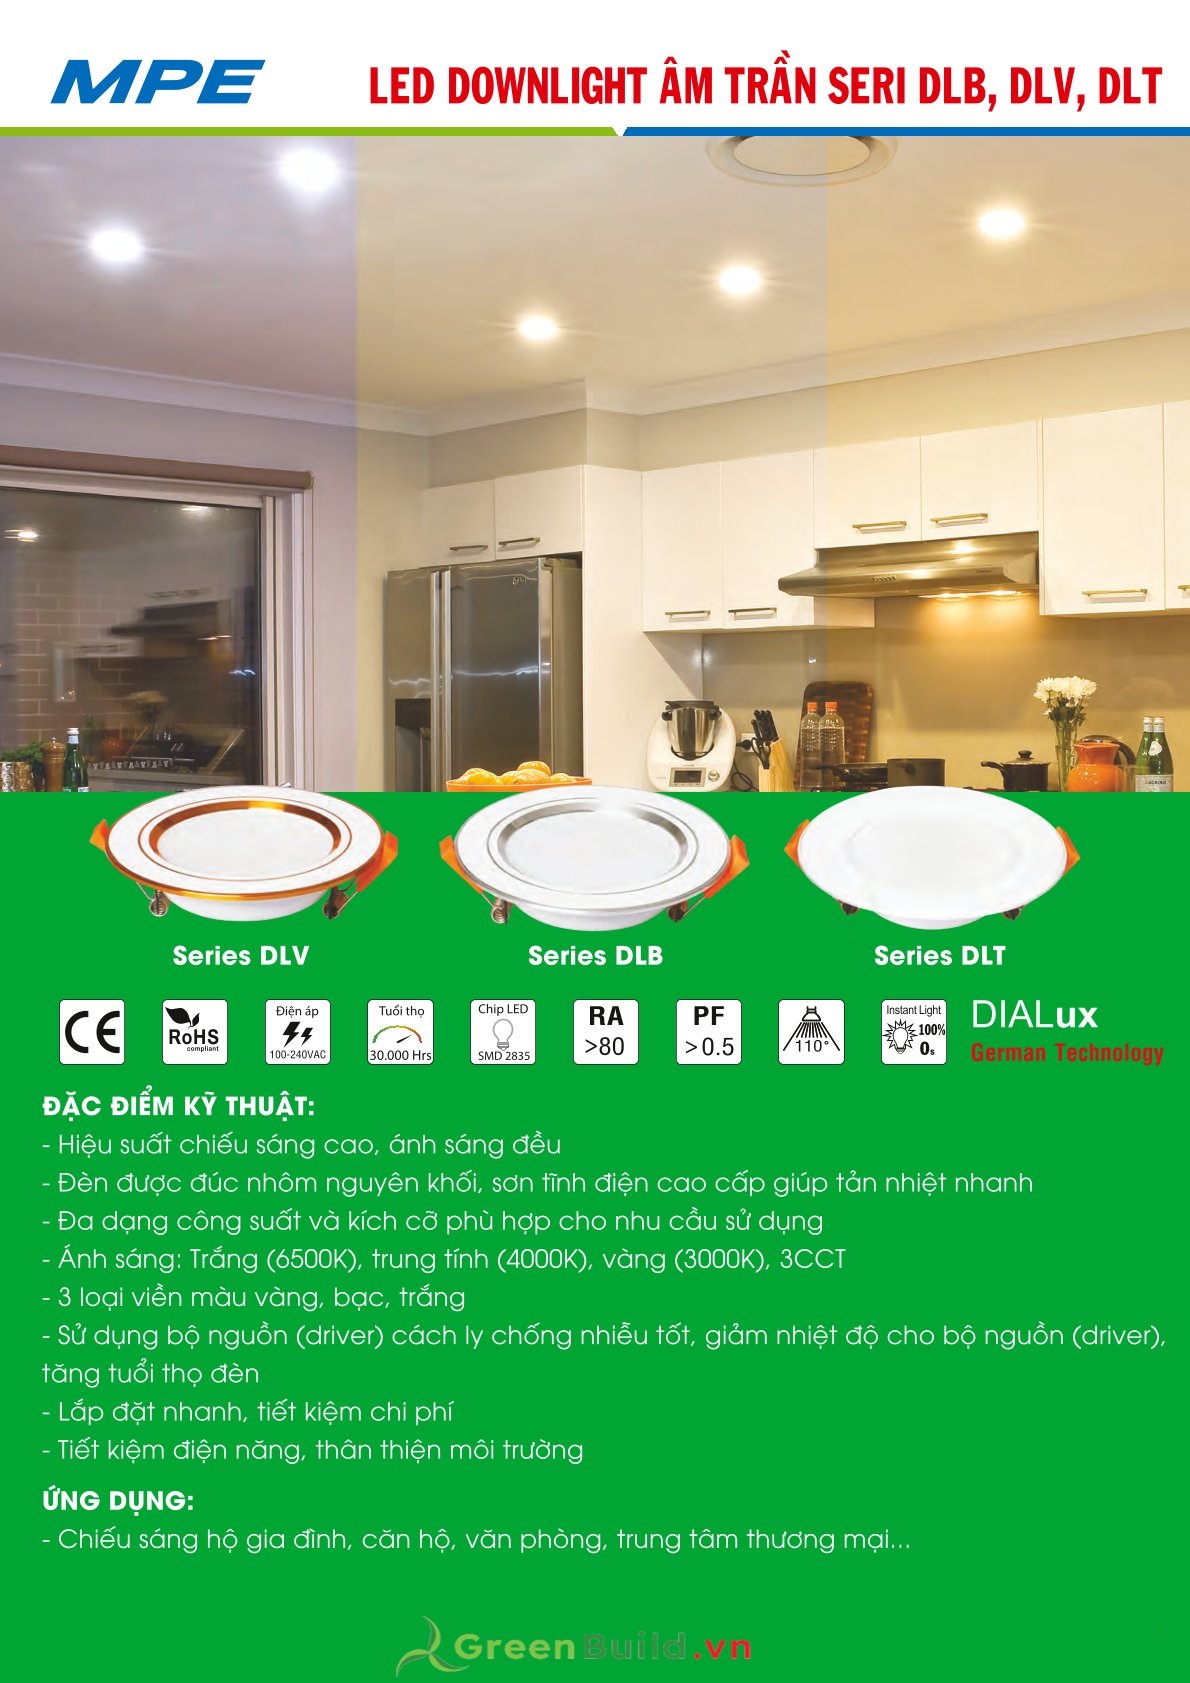 Greenbuild cung cấp đèn LED downlight 3 màu MPE DLT 9W [DLT-9/3C], đèn downlight âm trần 3 màu chất lượng cao, đèn LED MPE được bảo hành lâu dài